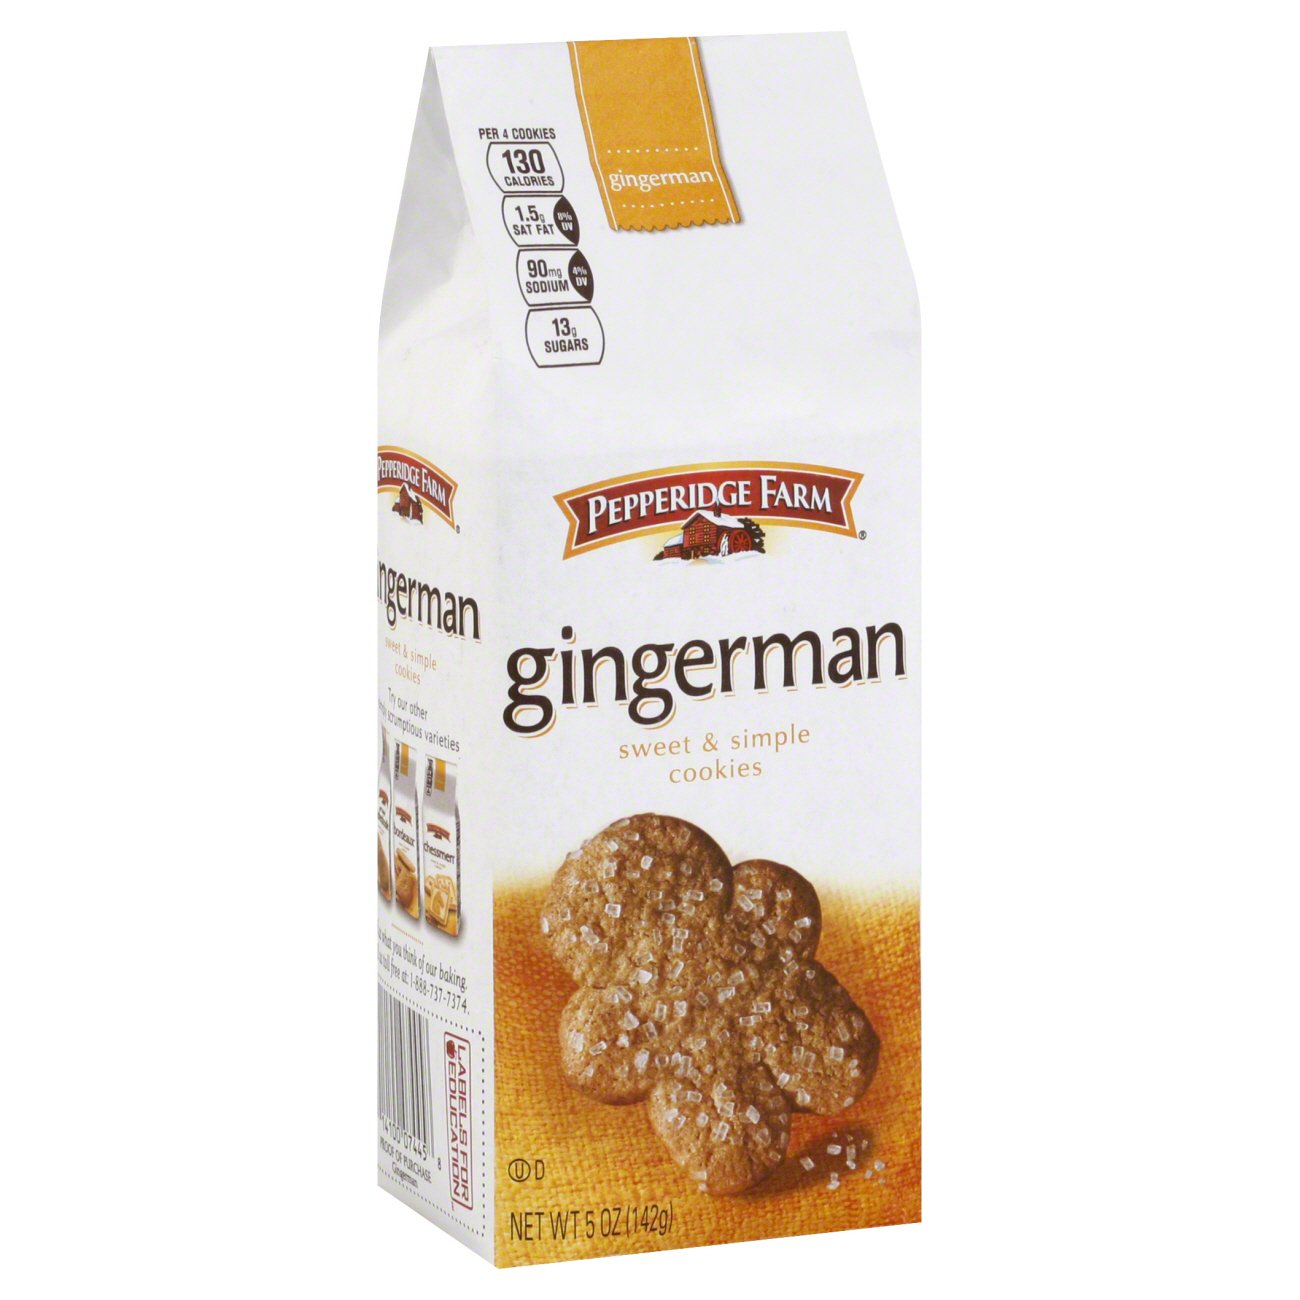 Pepperridge Farm Gingerman Cookies